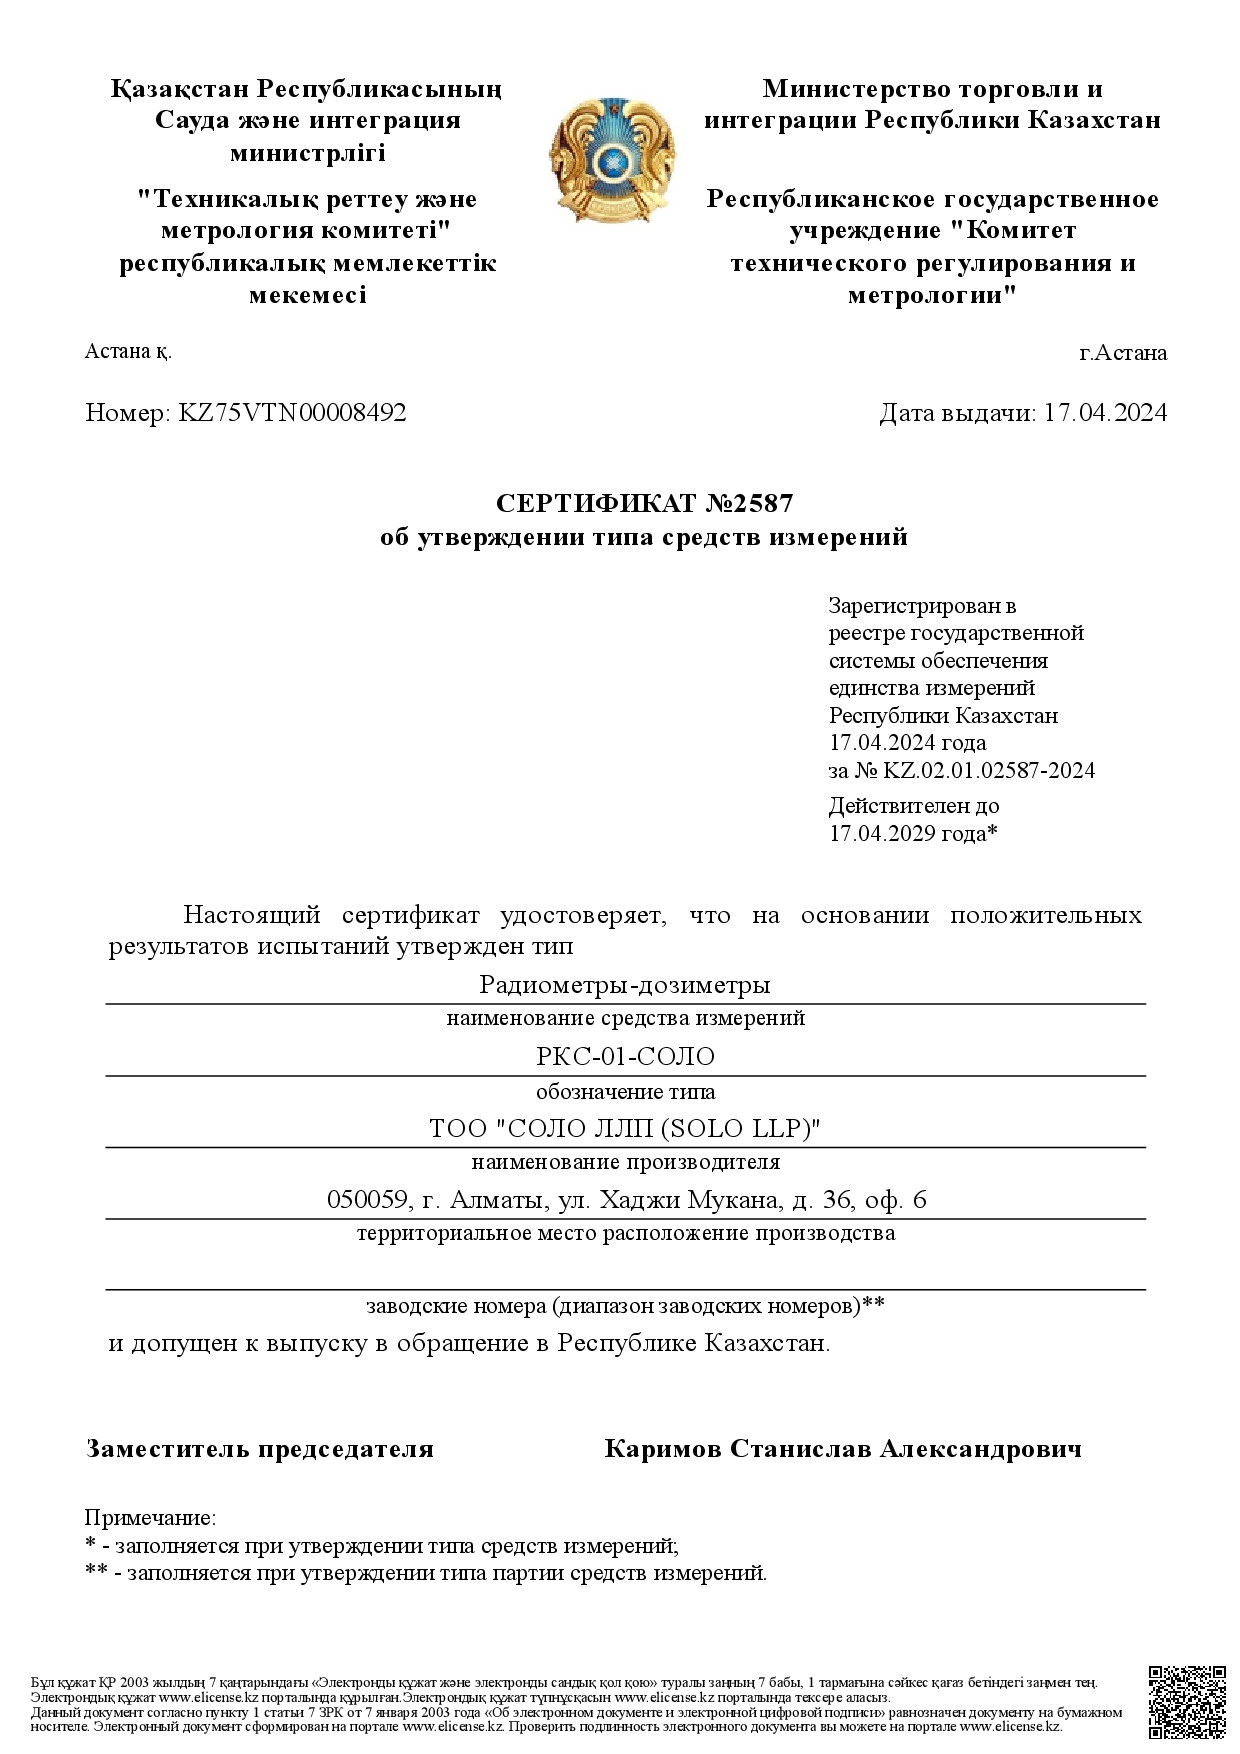 Новый сертификат об утверждении типа СИ радиометров-дозиметров "РКС-01-СОЛО" (и модификаций)